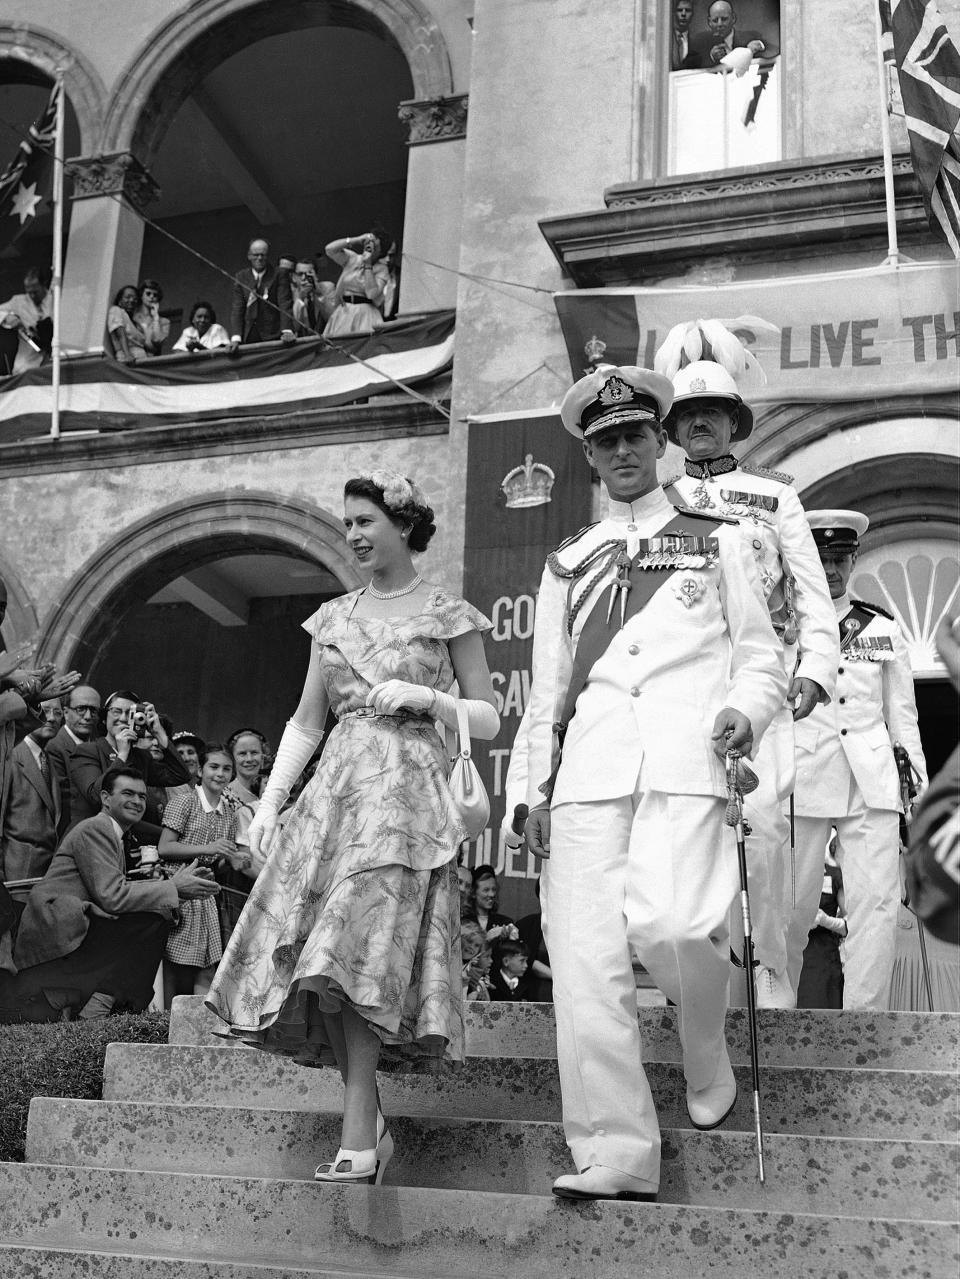 ARCHIVO – La reina Isabel II de Gran Bretaña y el duque de Edimburgo salen de la Cámara de la Asamblea después de que la reina diera un discurso en el Parlamento Colonial de Bermuda, en Bermuda el 25 de noviembre de 1953. (Foto AP, archivo)